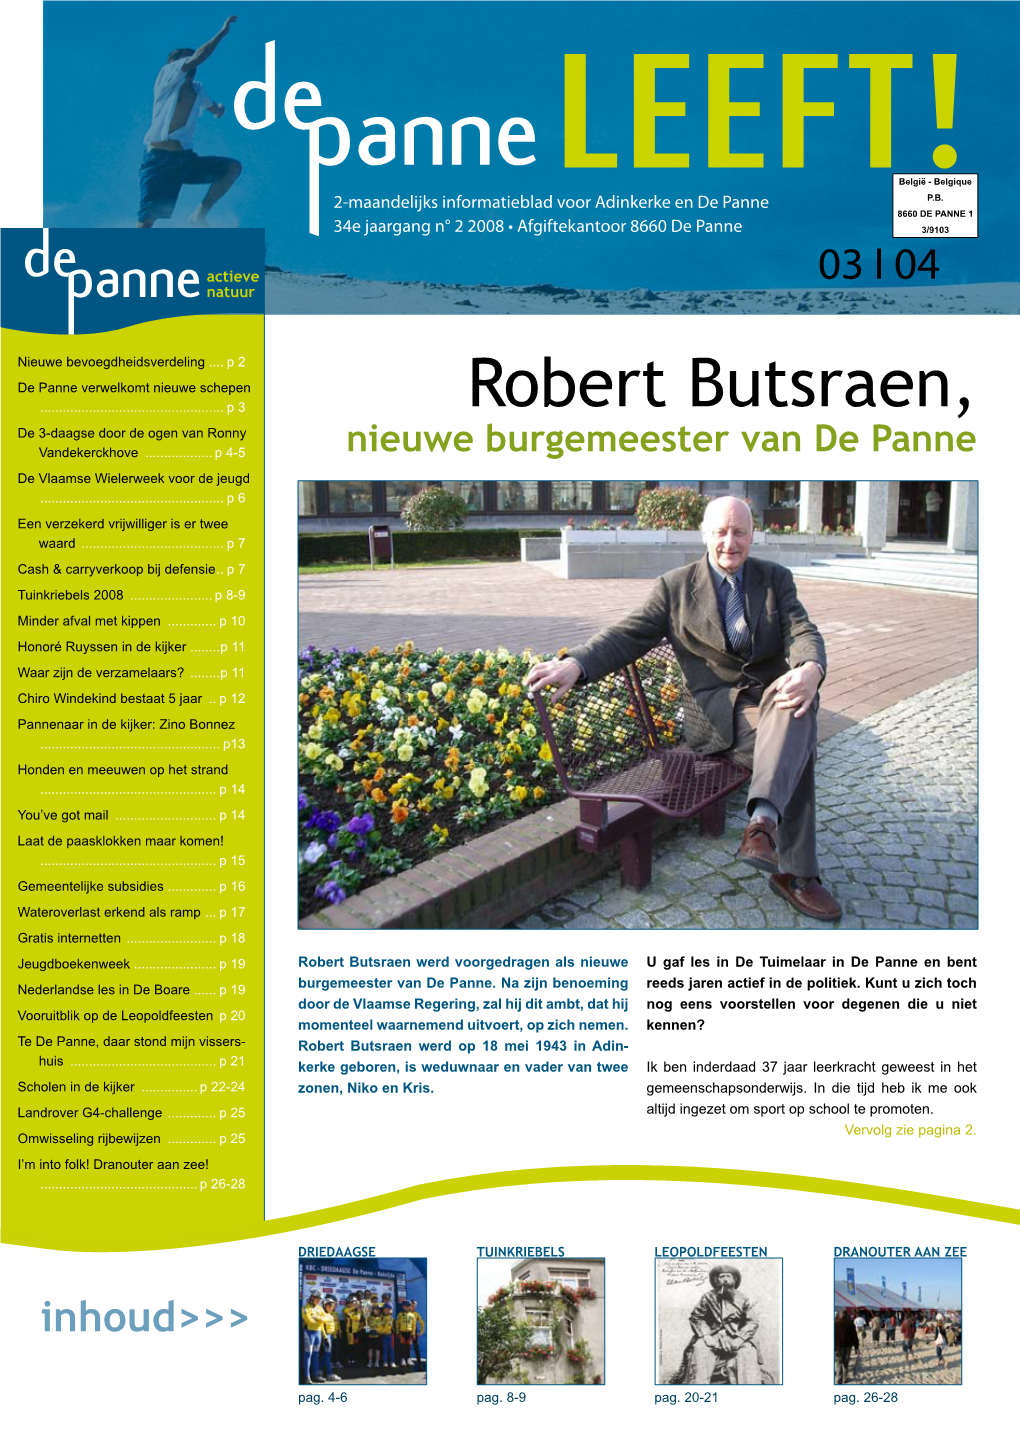 Robert Butsraen, De 3-Daagse Door De Ogen Van Ronny Vandekerckhove